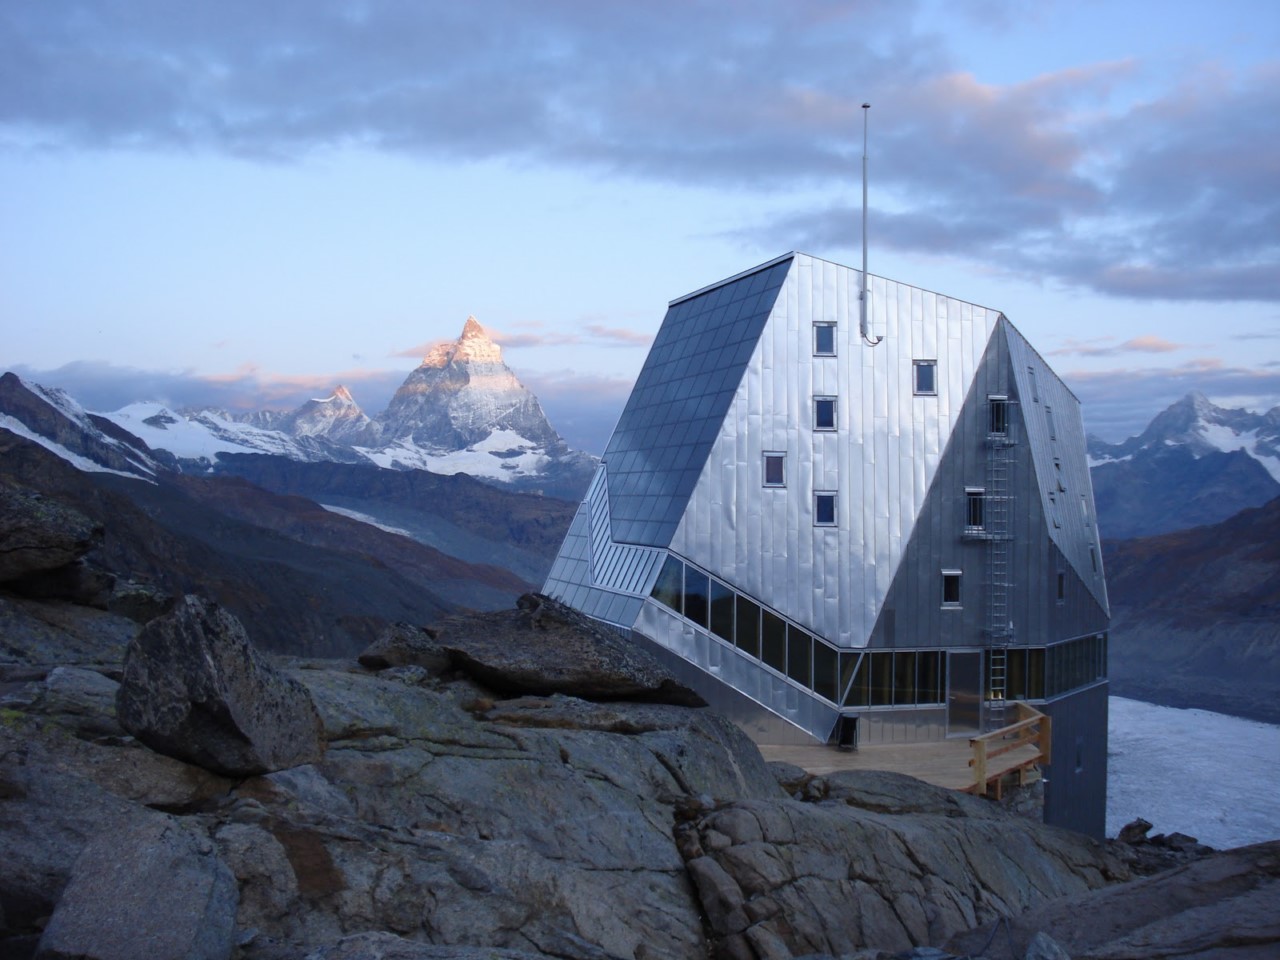 Monte Rosa Hut, Swiss Alps, Швейцария